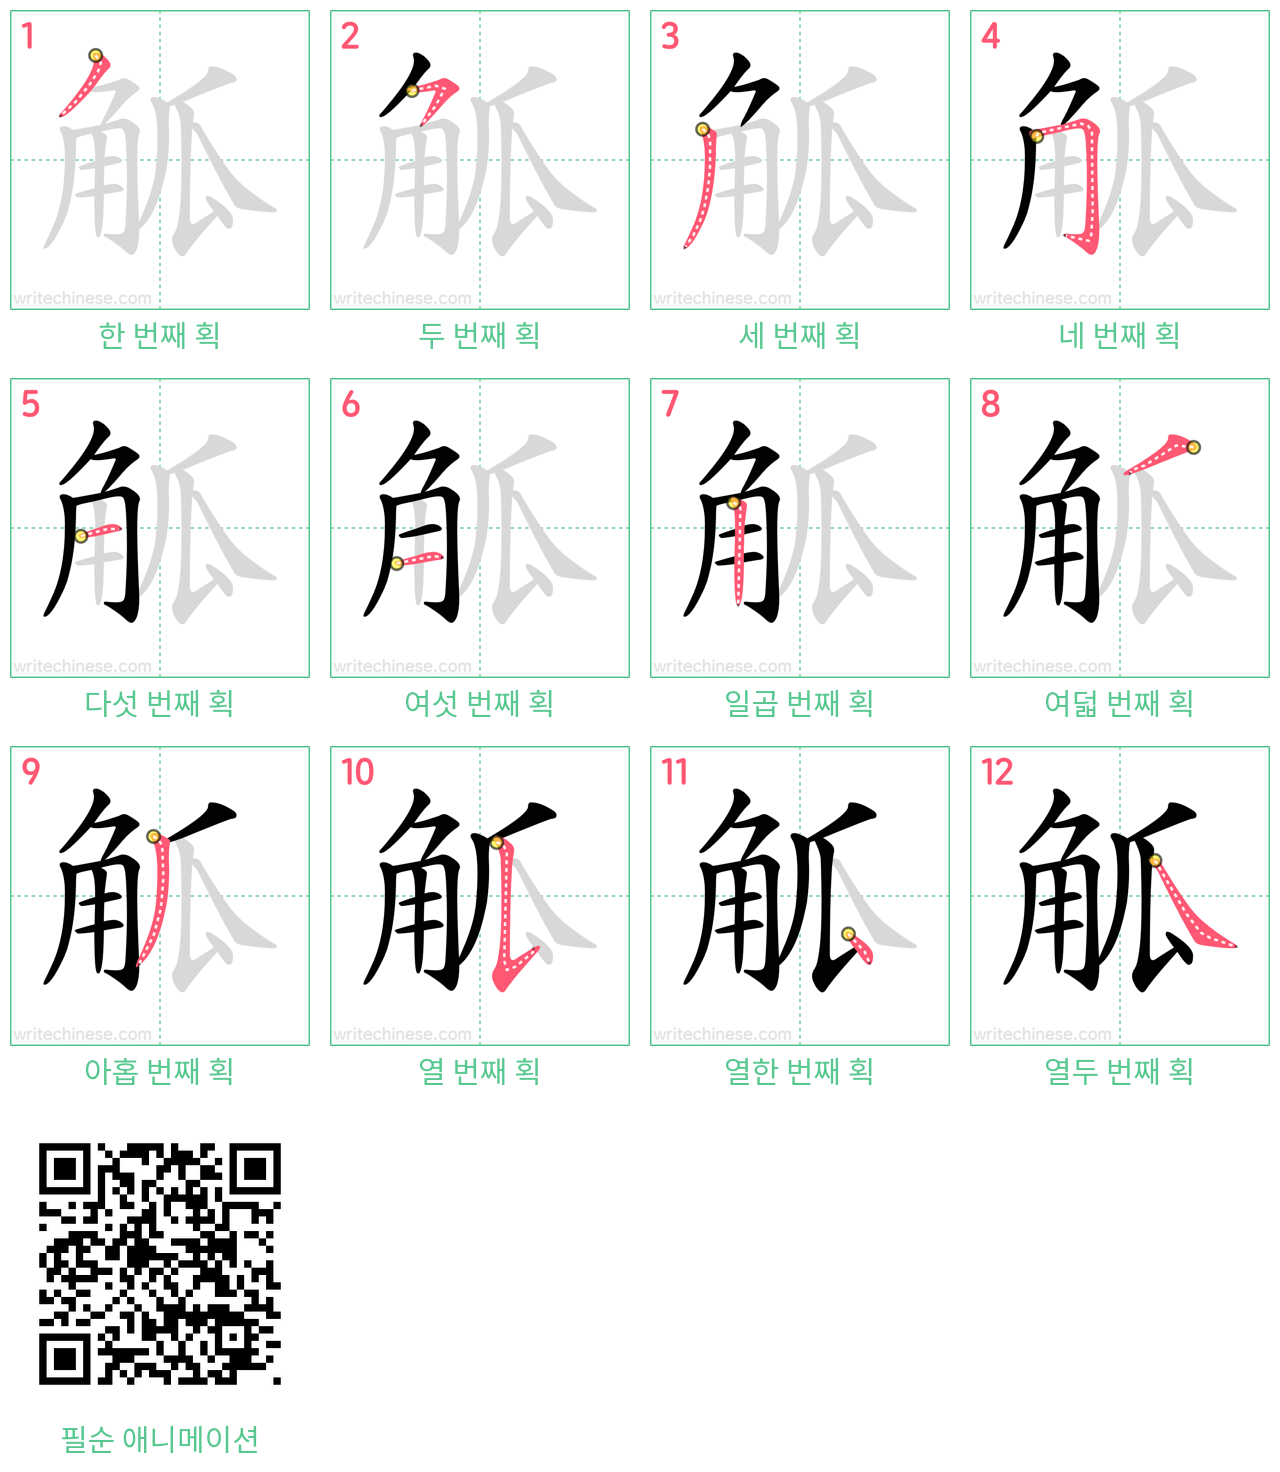 觚 step-by-step stroke order diagrams